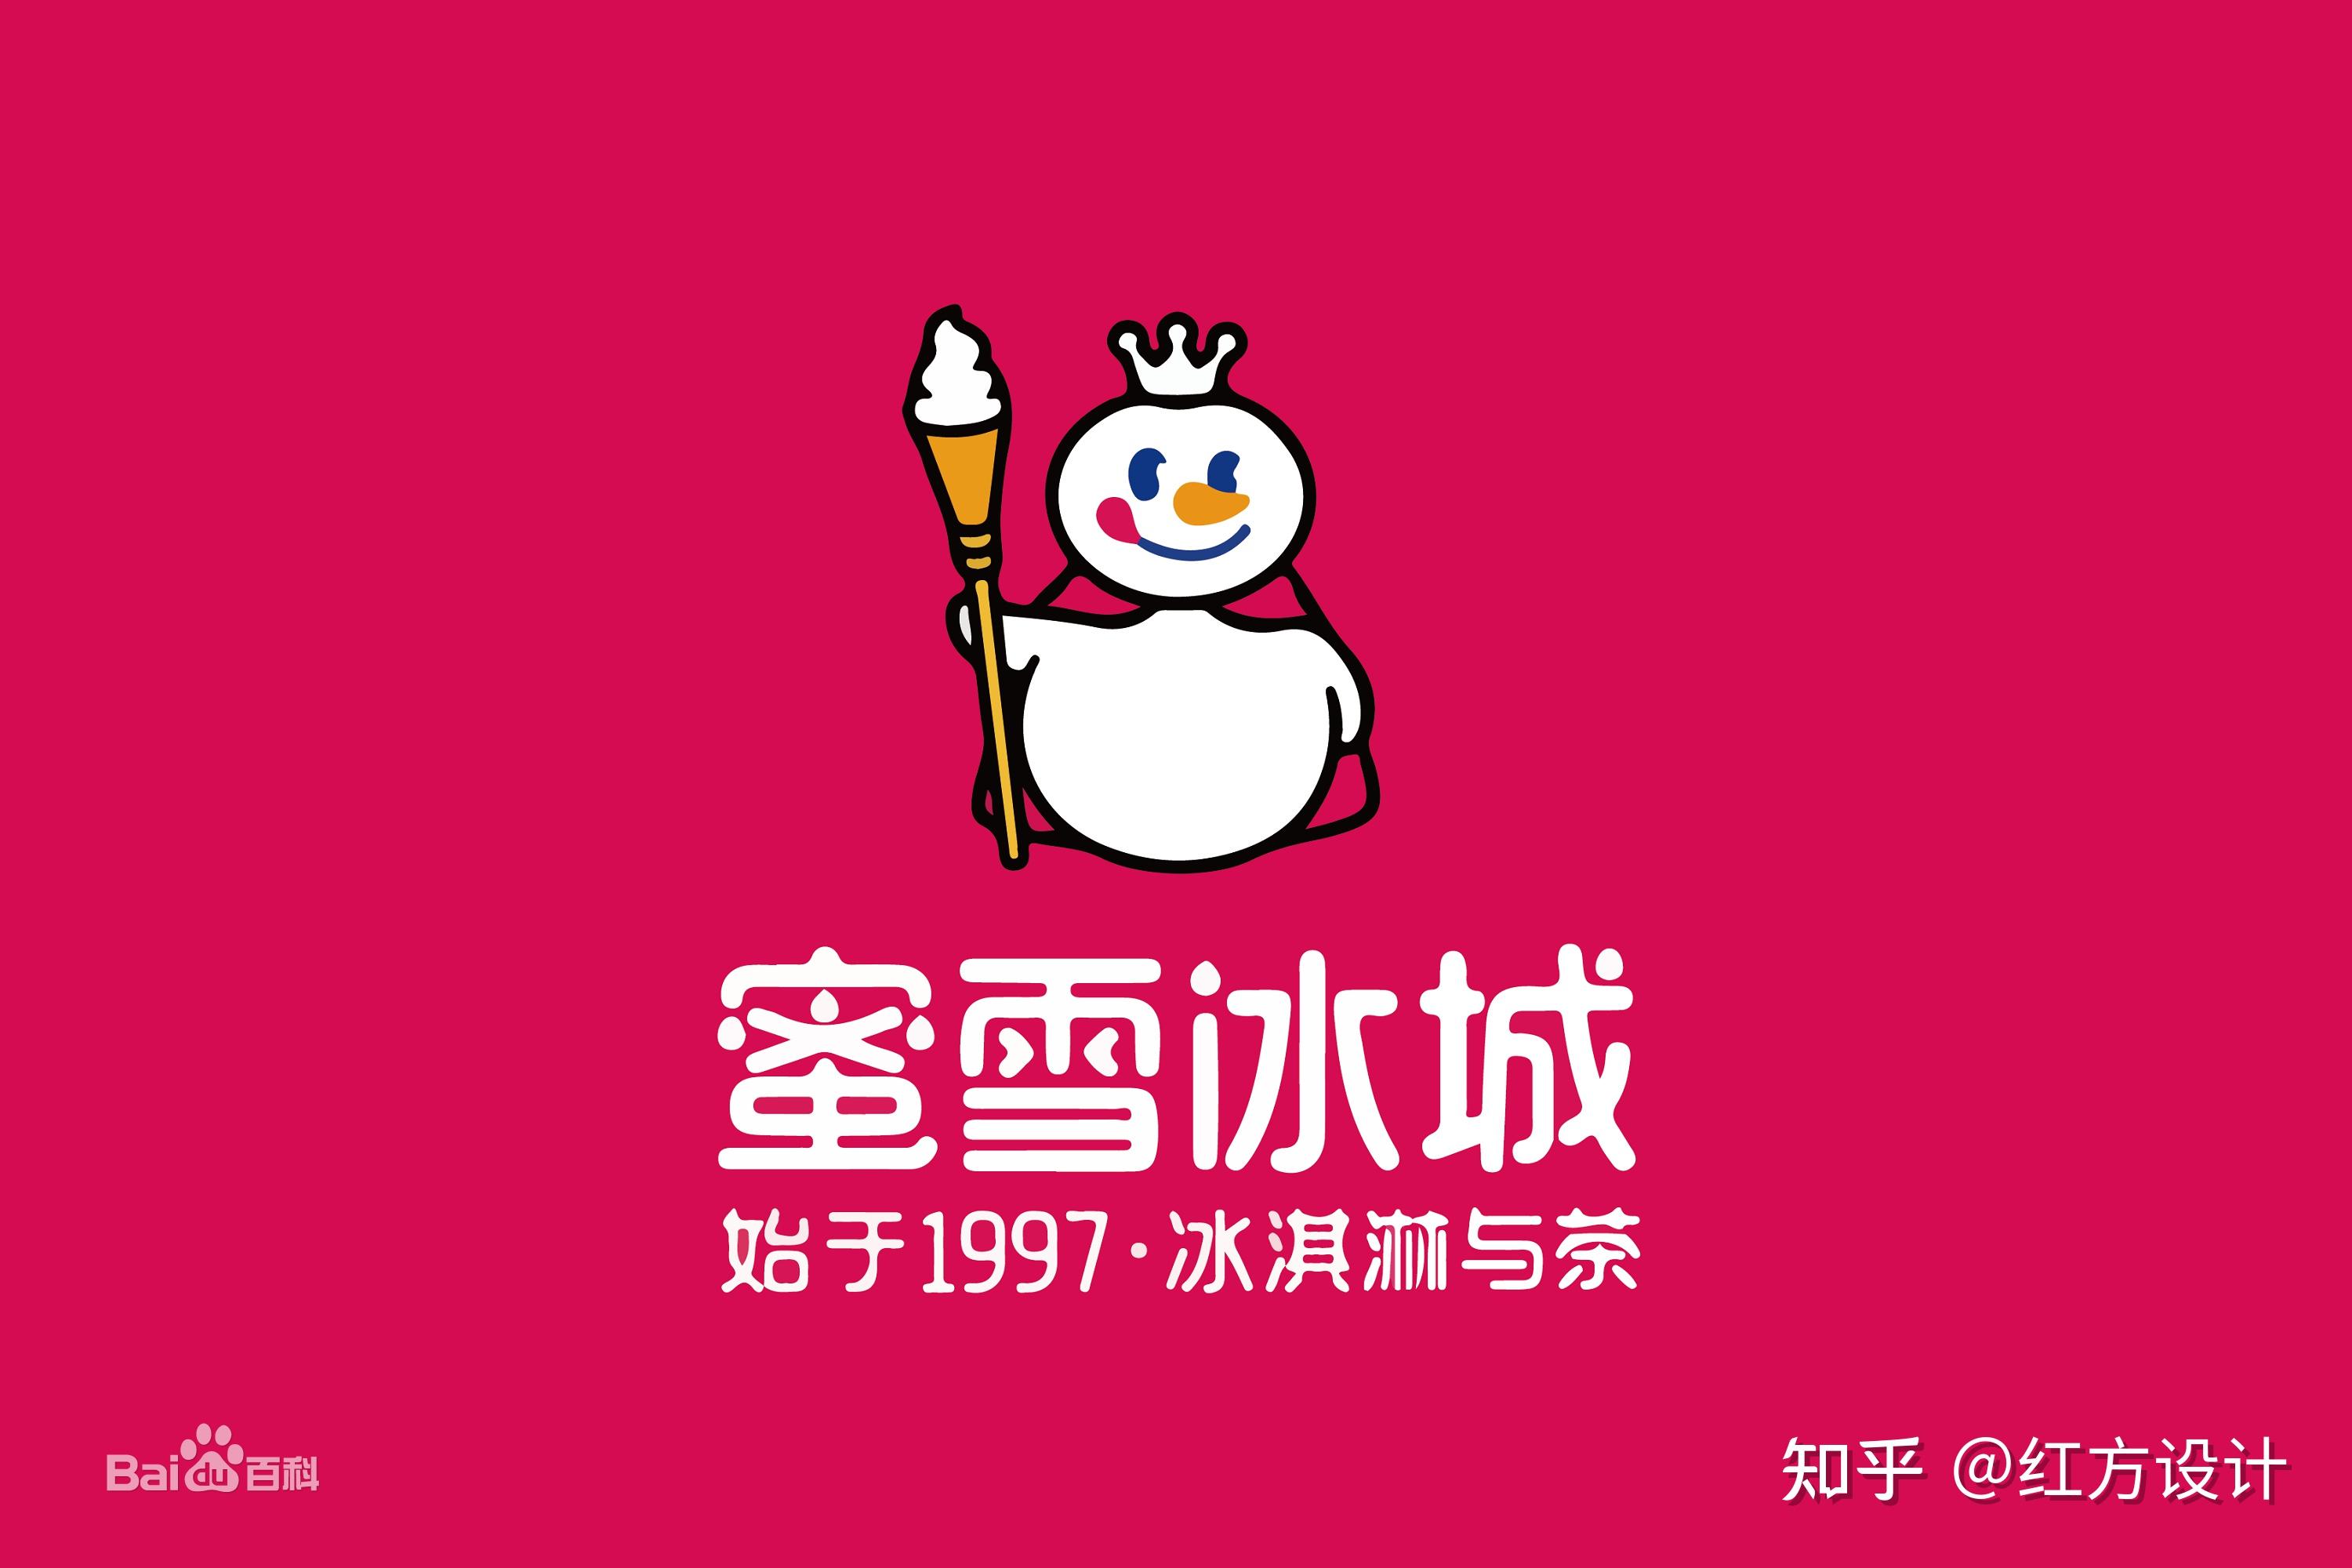 蜜雪冰城的 "logo" 化代言人"雪王".